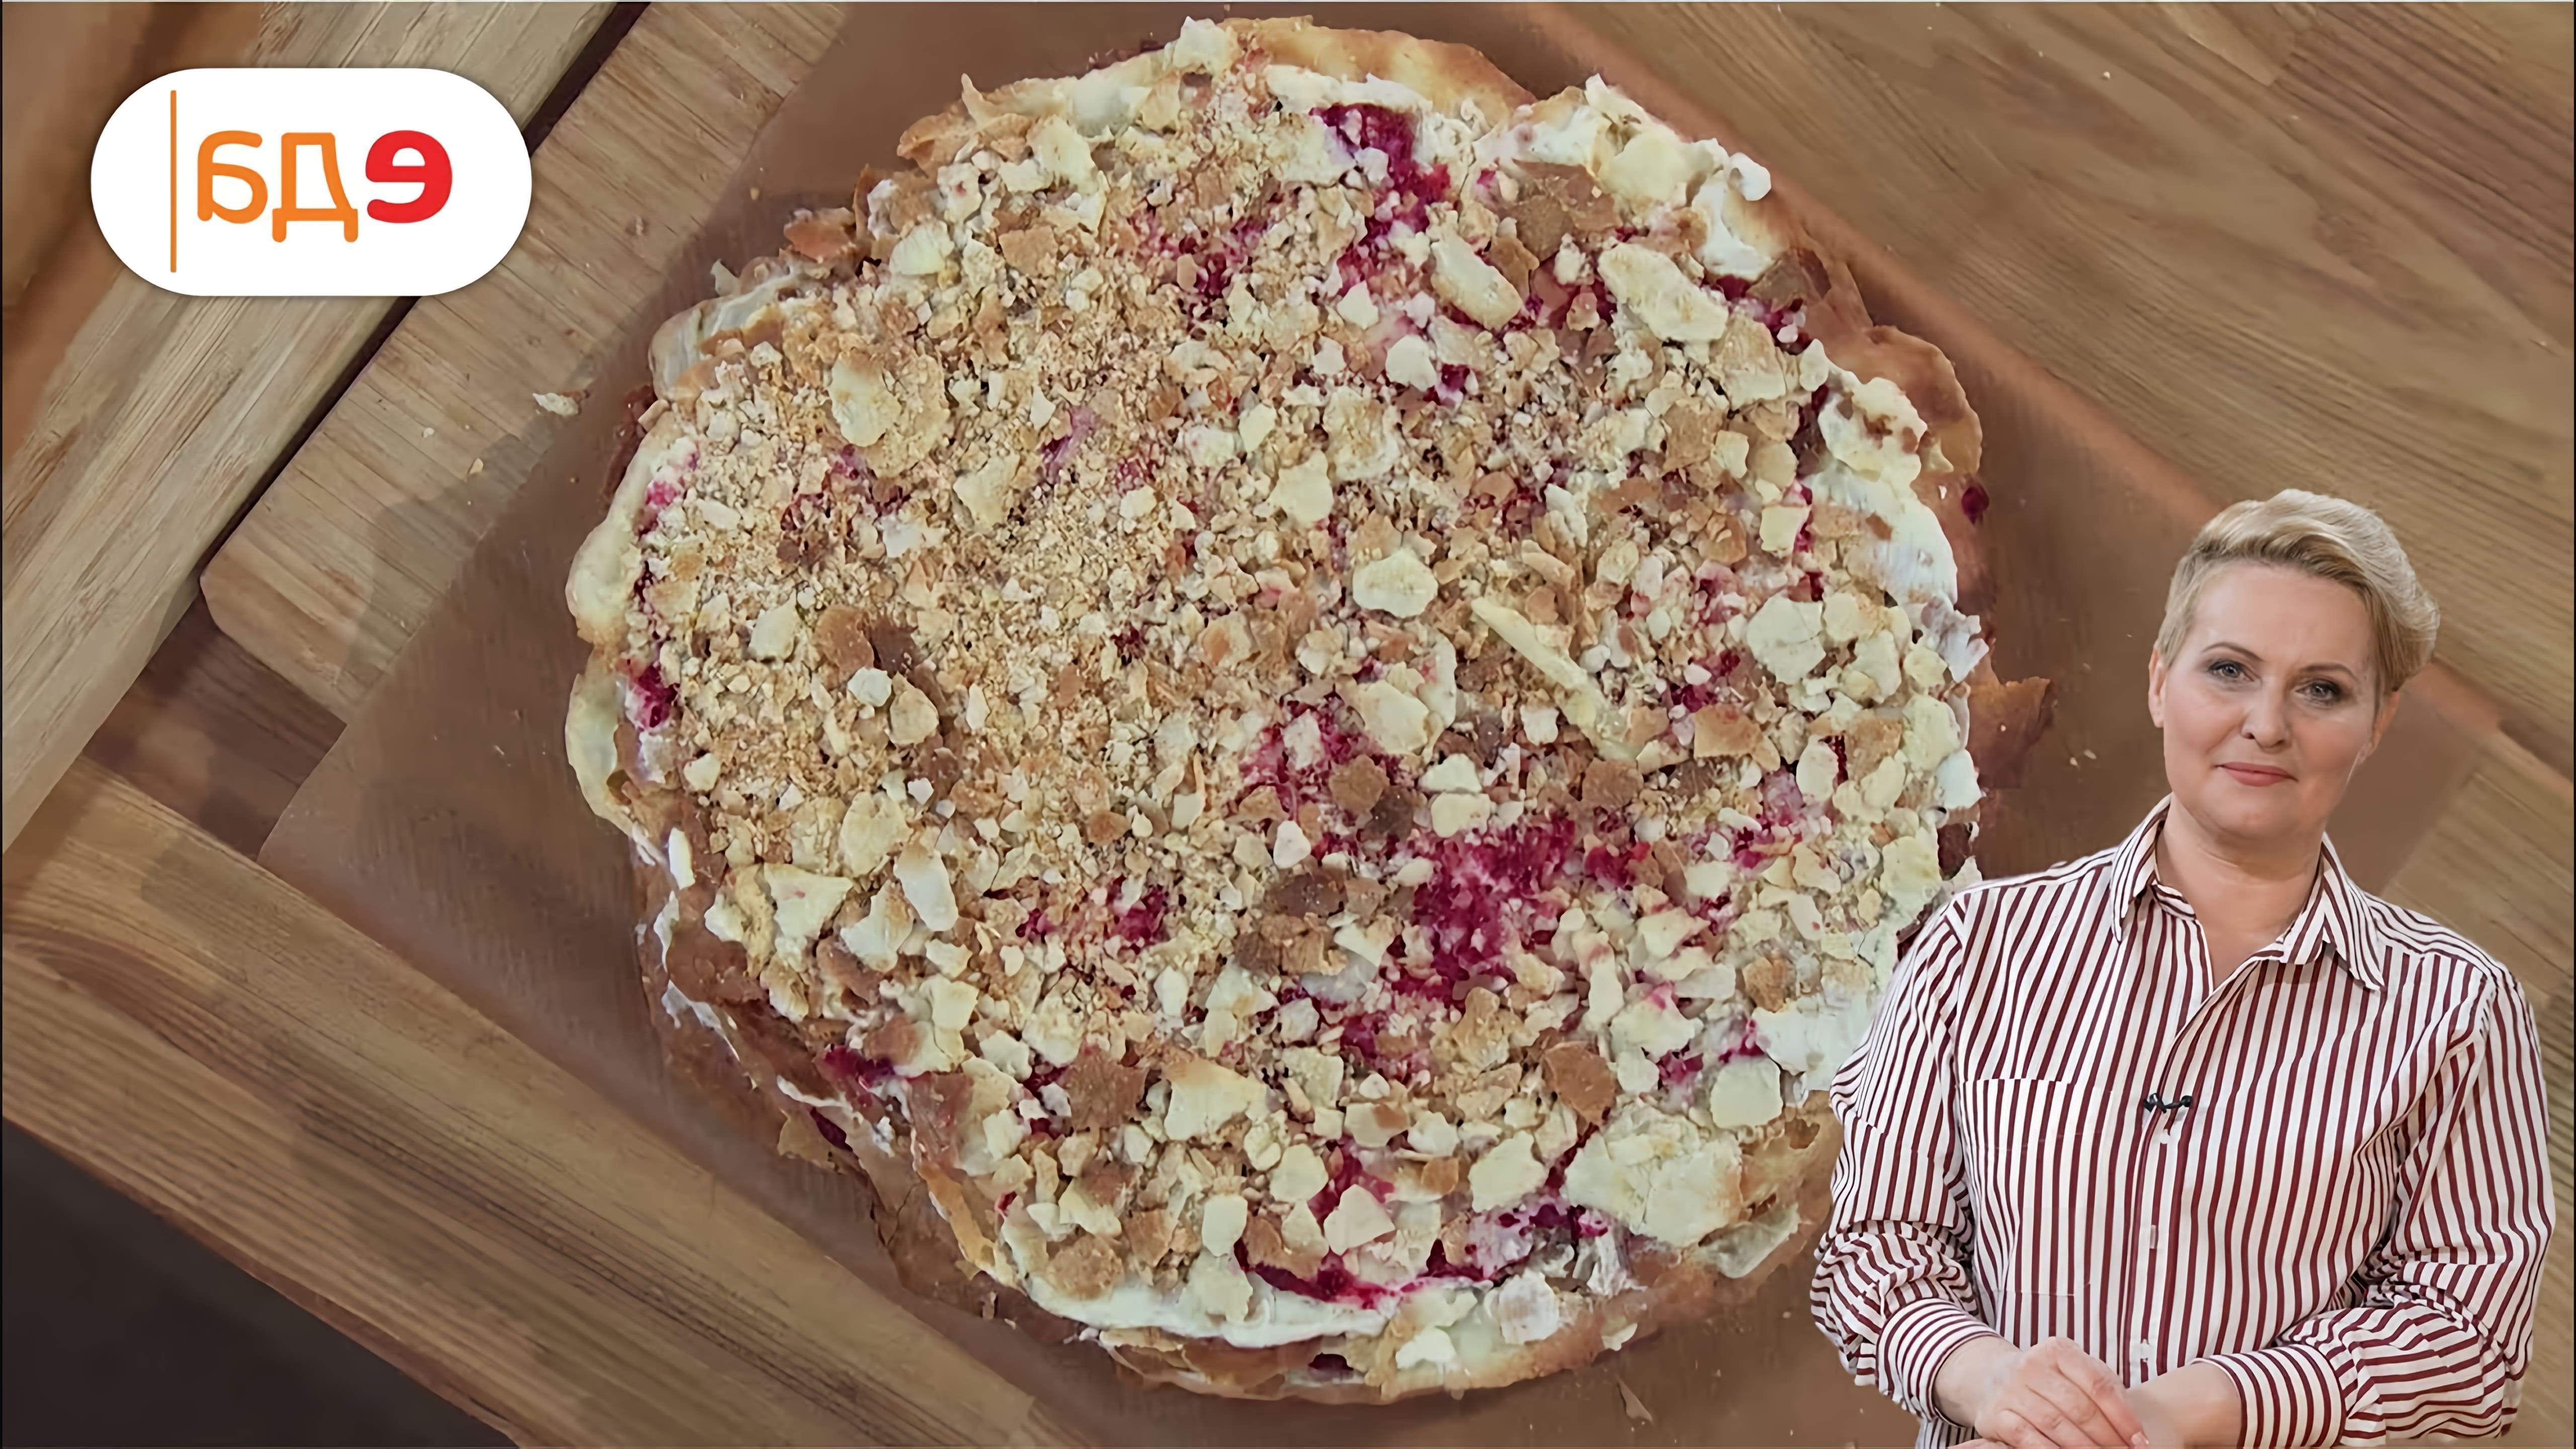 В этом видео показано, как приготовить домашний "Наполеон" - слоеный торт с заварным кремом